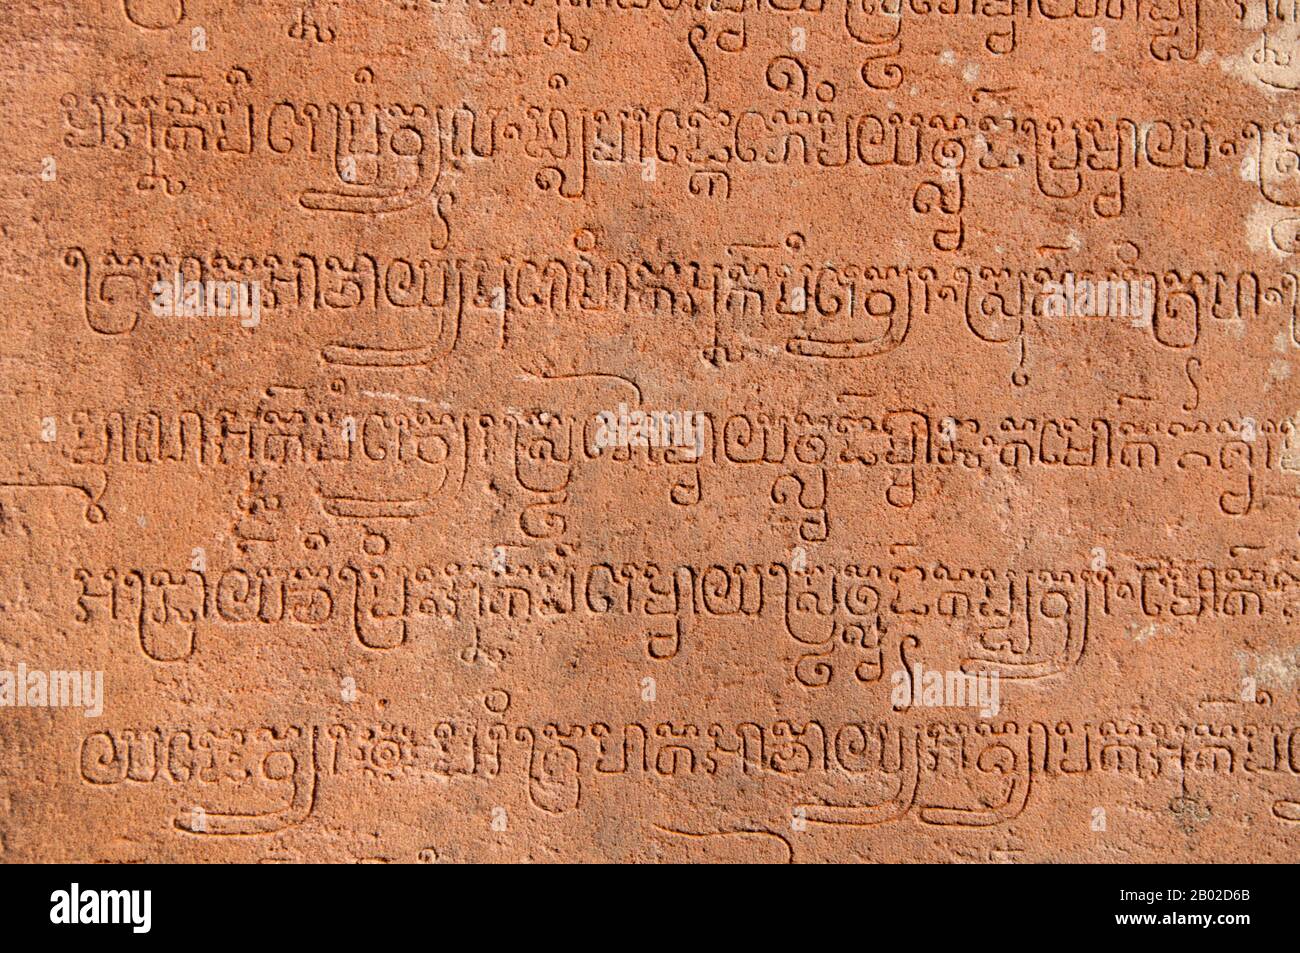 Banteay Srei (o Banteay Srey) es un templo camboyano del siglo X dedicado al dios hindú Shiva y se encuentra al noreste del grupo principal de templos en Angkor. Banteay Srei está construido en gran parte de arenisca roja, un medio que se presta a las elaboradas esculturas decorativas de pared que todavía son observables hoy en día. A Banteay Srei se le conoce a veces como la "joya del arte jemer". Foto de stock